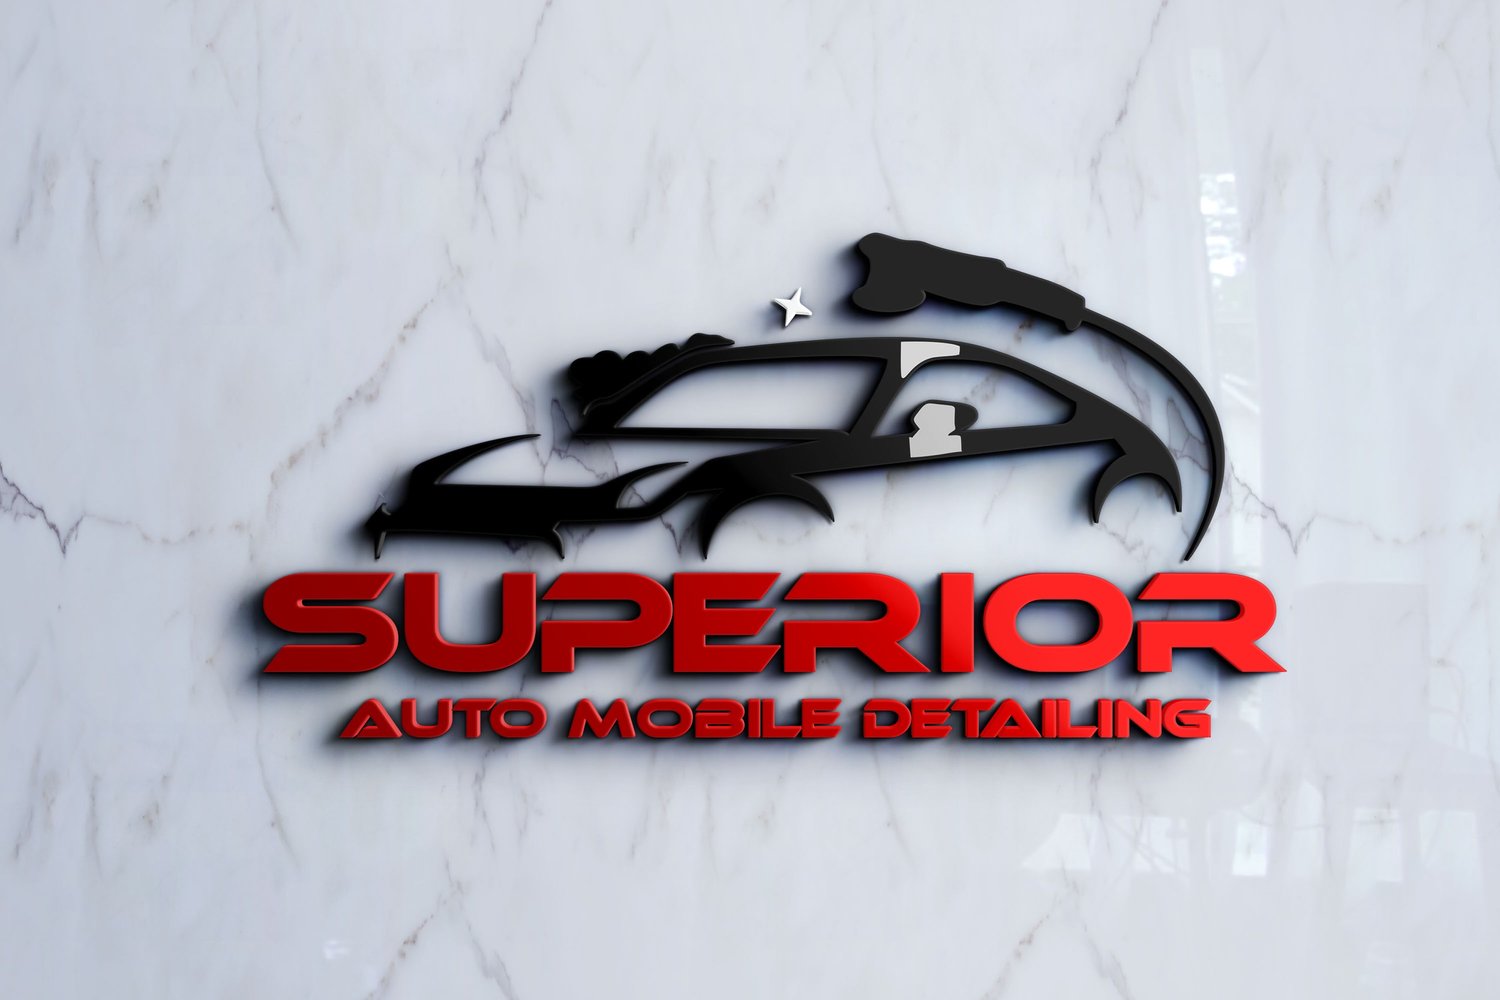 Superior Auto Mobile Detailing